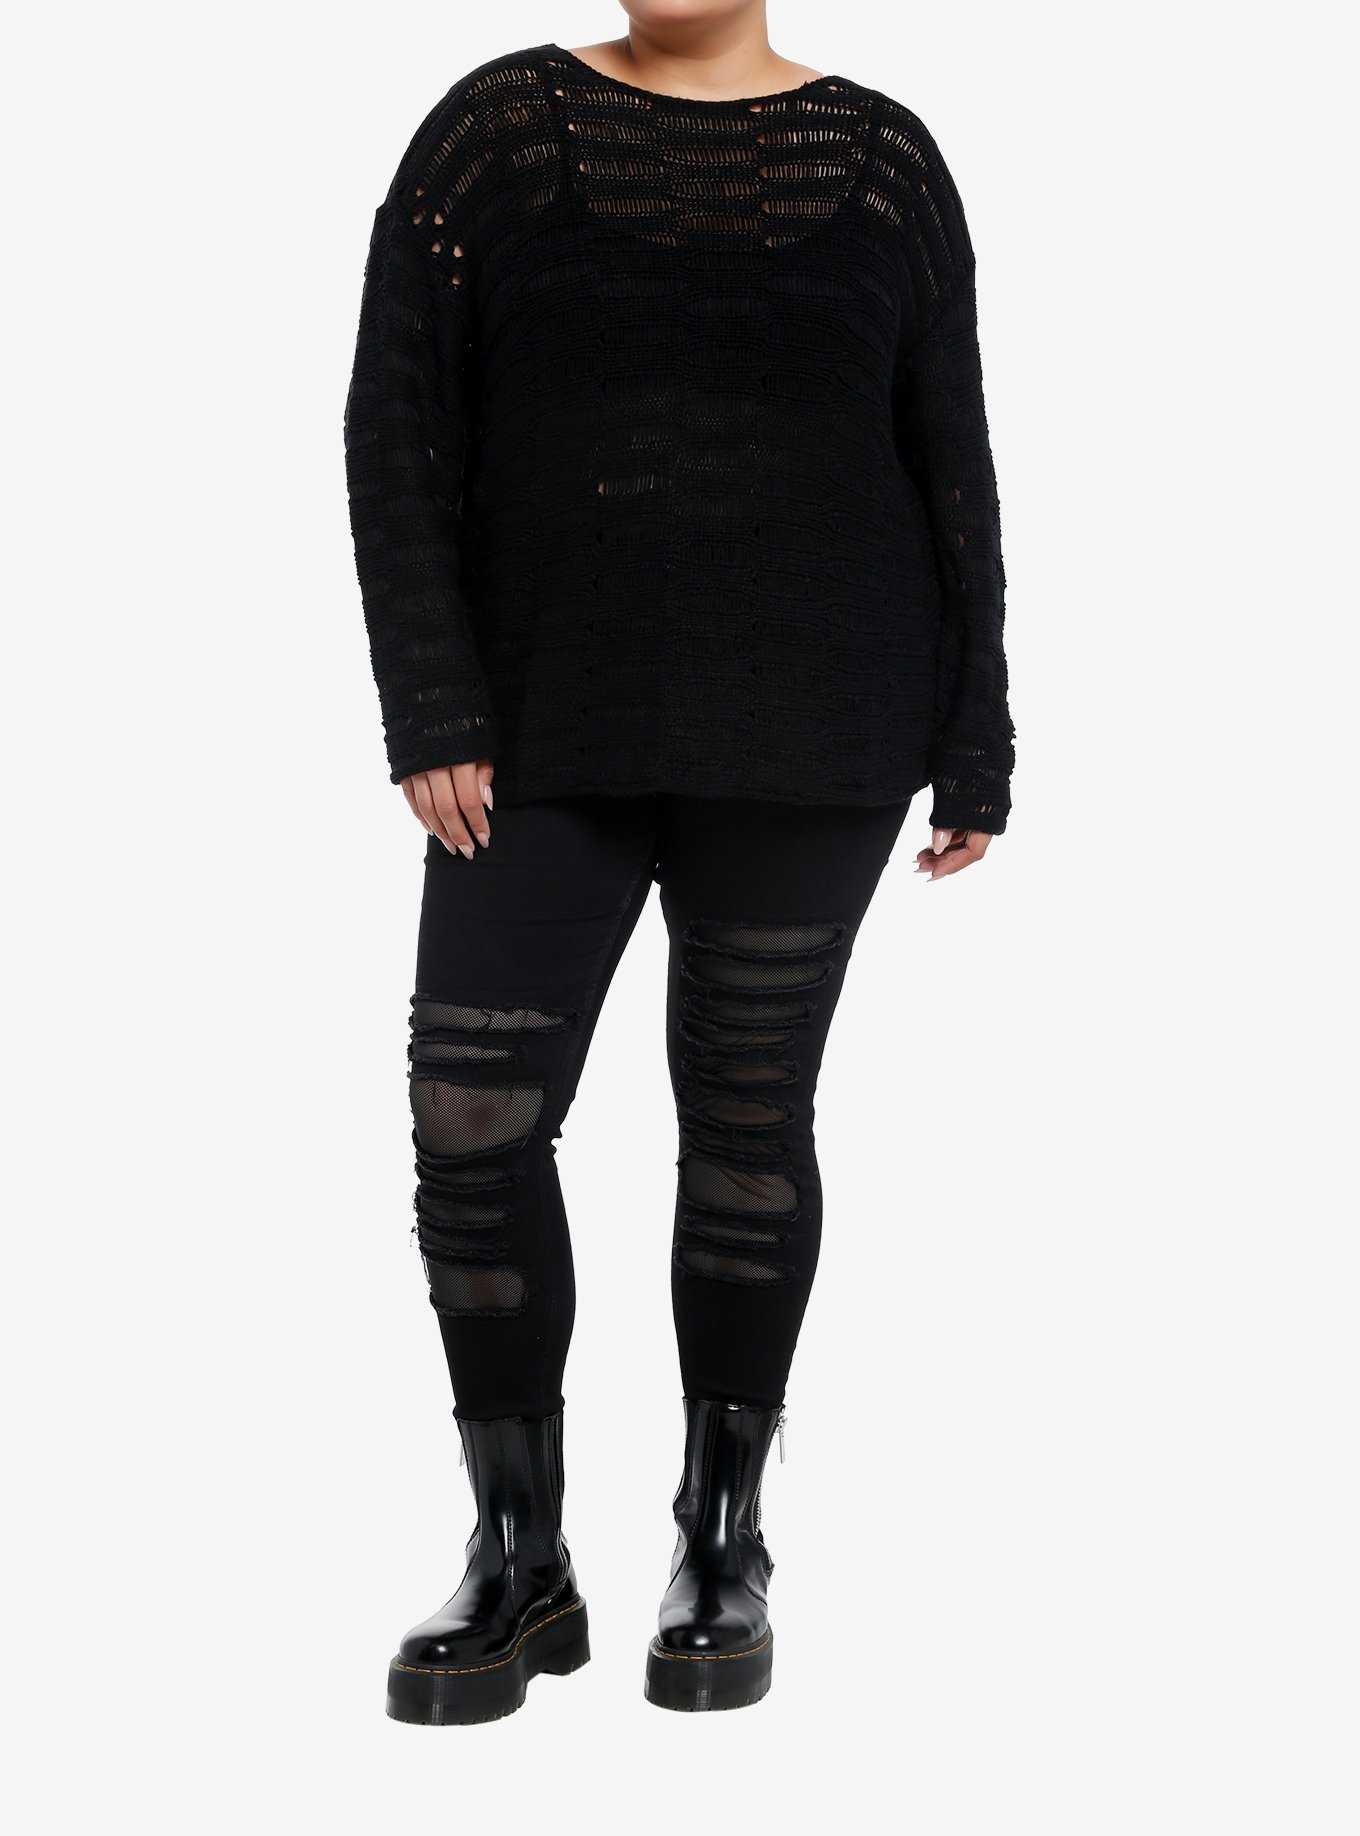 Social Collision Black Destructed Boyfriend Fit Girls Sweater Plus Size, , hi-res